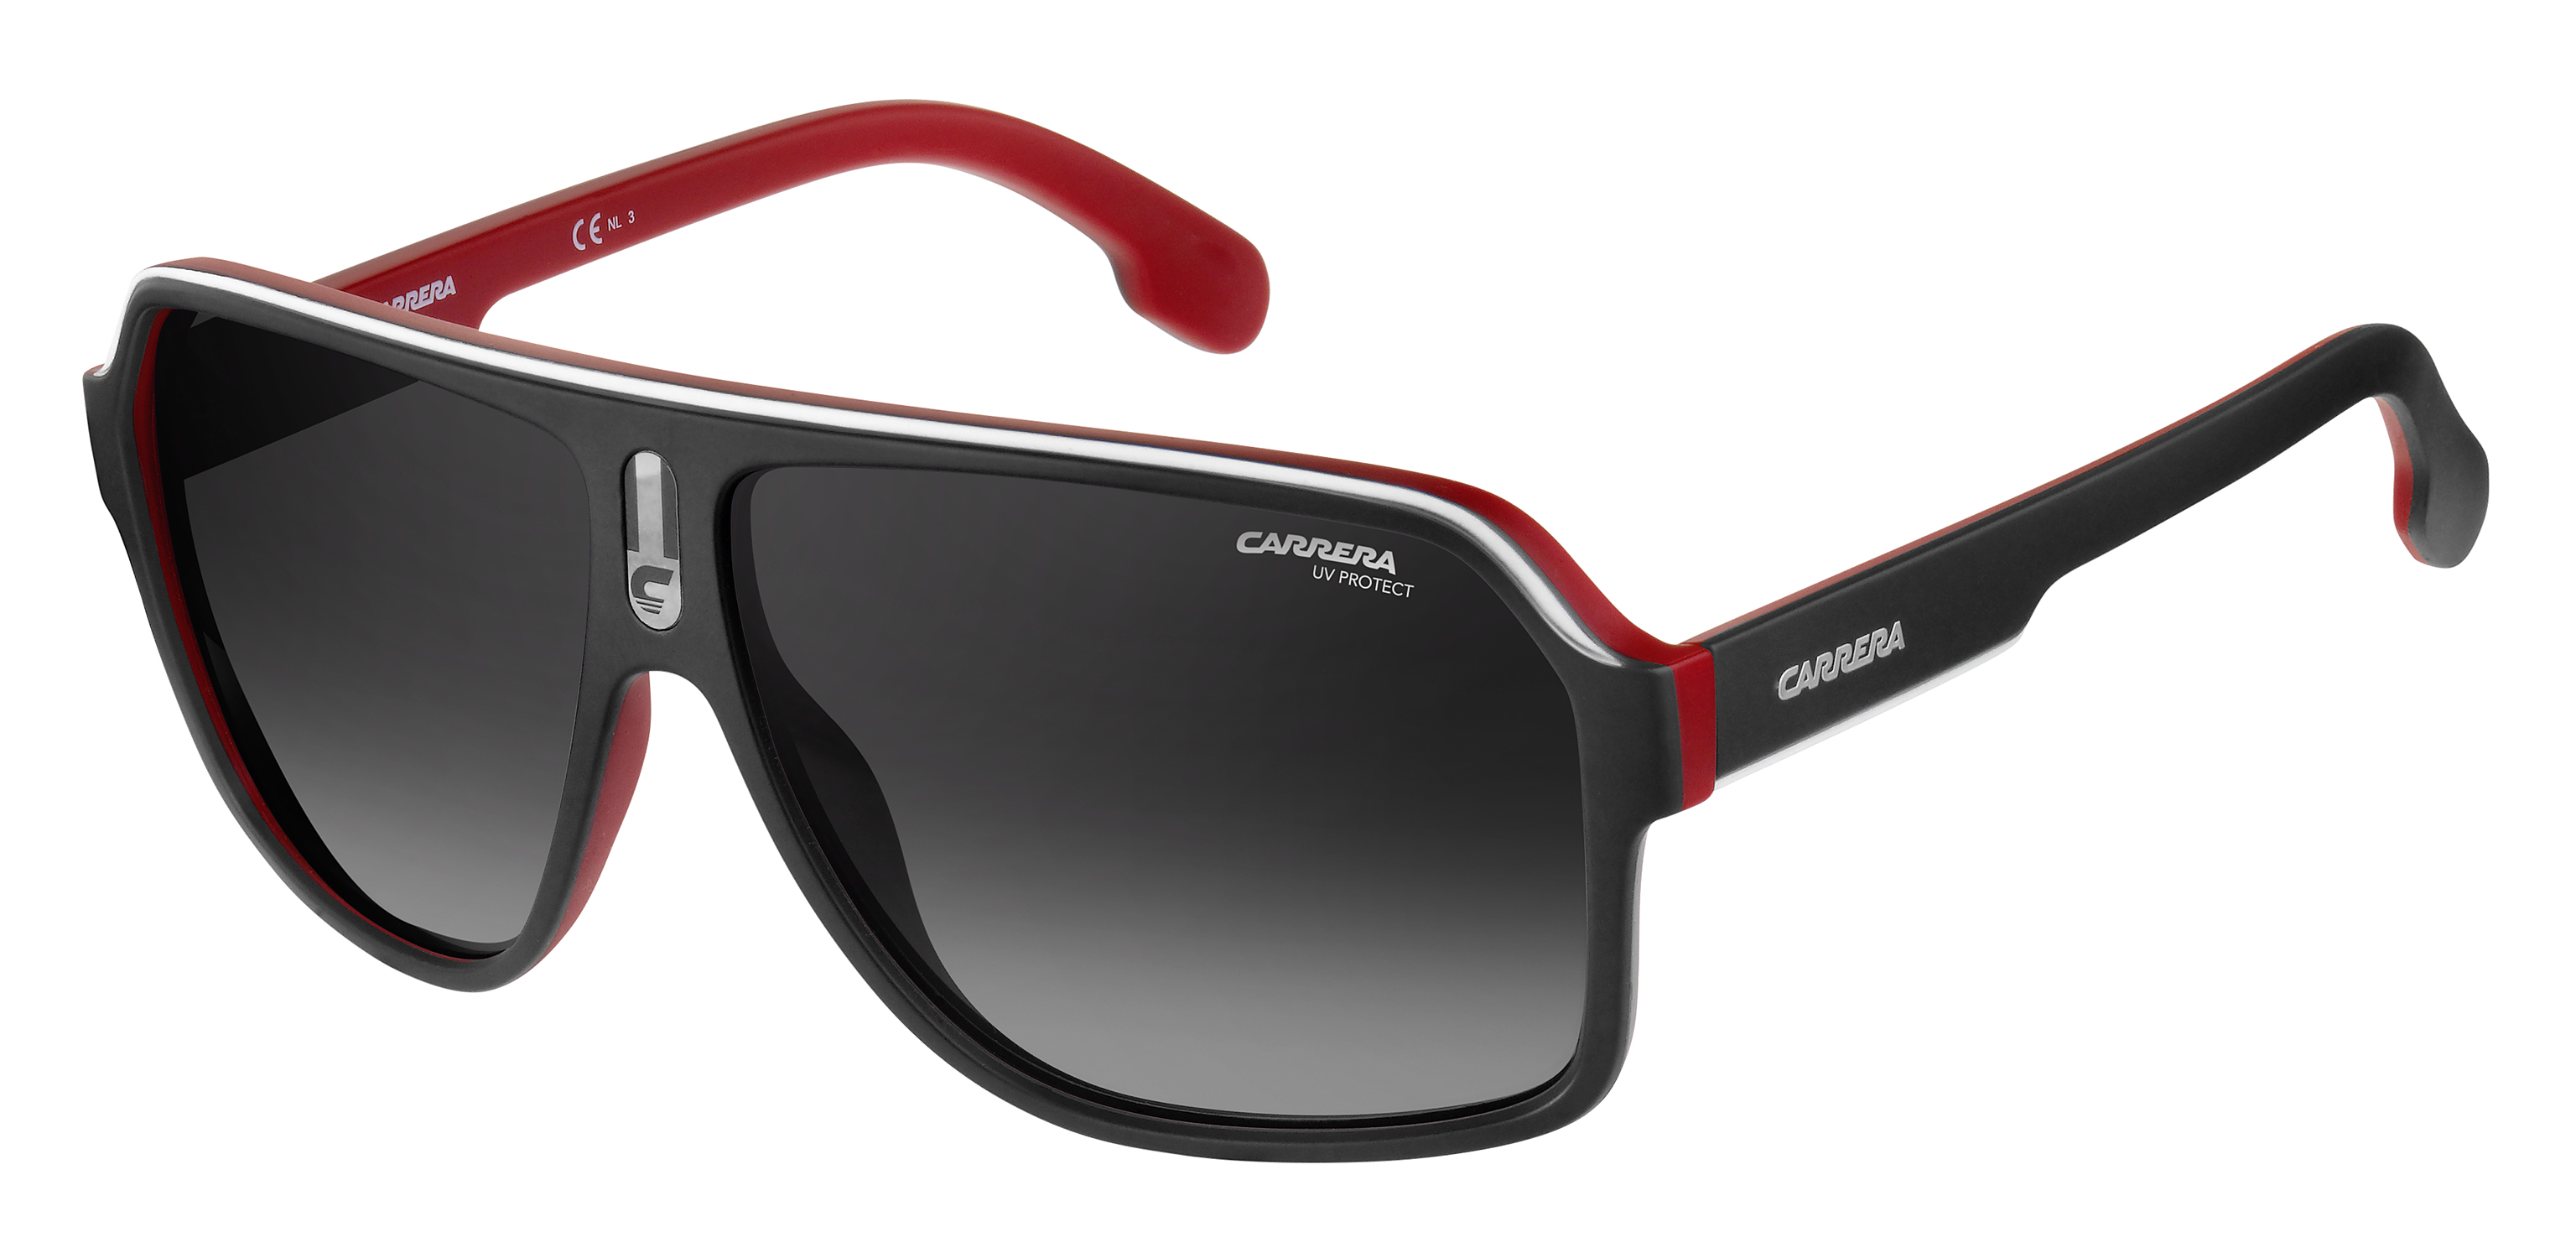 Купить солнцезащитные очки мужские оригинал. Carrera очки 1052/s. Carrera 1003 / s¡ New,. Очки Carrera мужские солнцезащитные. Очки Carrera 005/s.